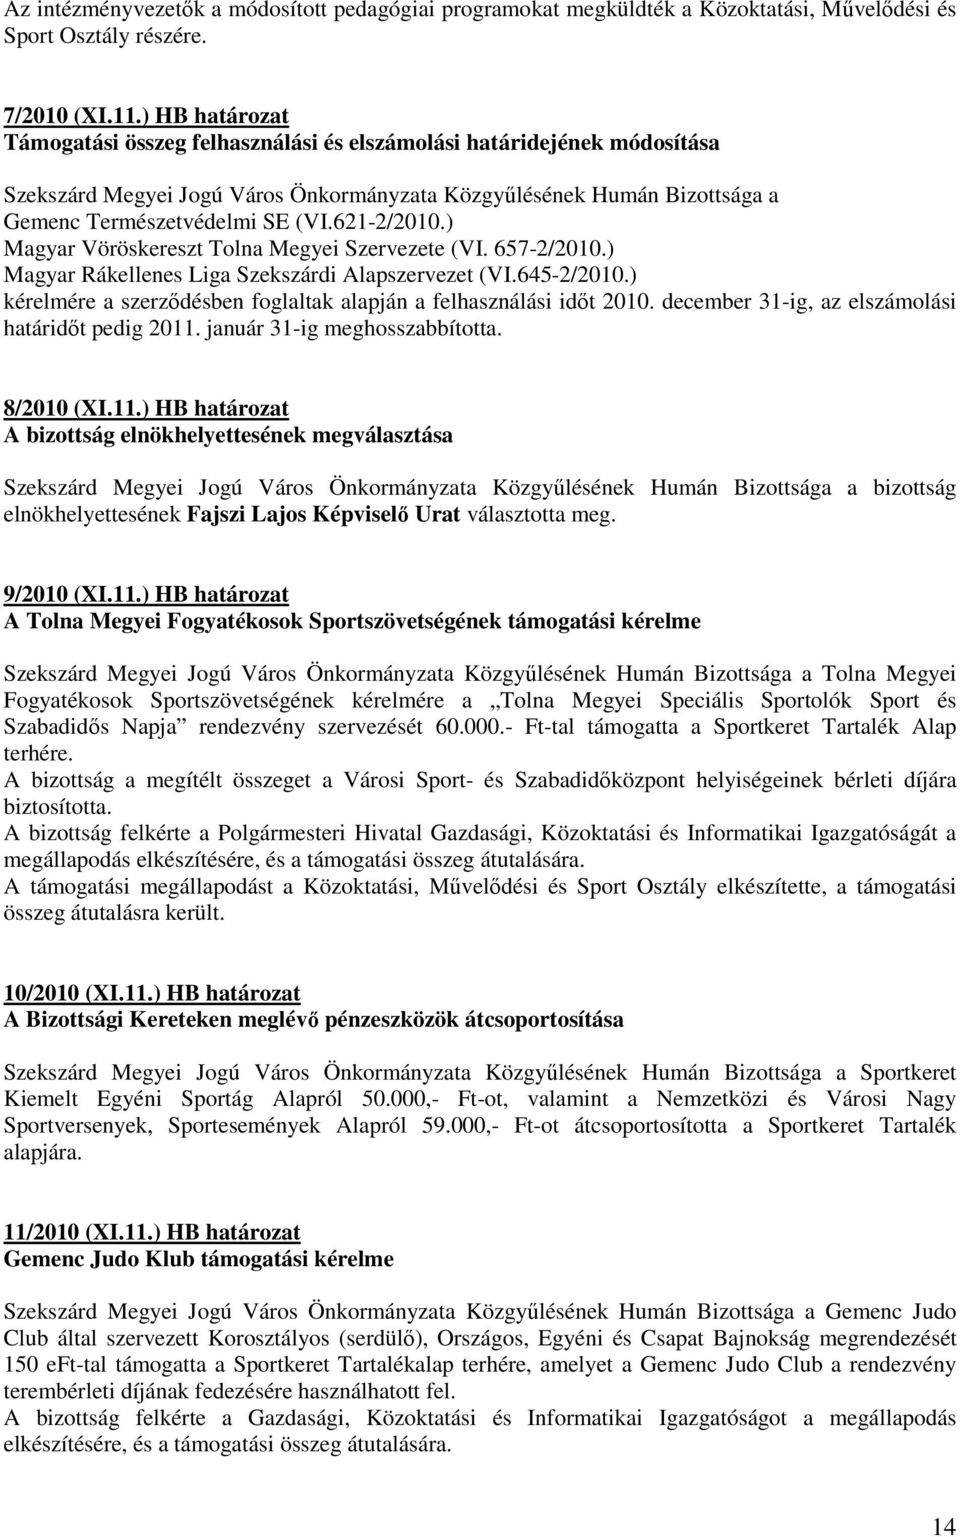 621-2/2010.) Magyar Vöröskereszt Tolna Megyei Szervezete (VI. 657-2/2010.) Magyar Rákellenes Liga Szekszárdi Alapszervezet (VI.645-2/2010.